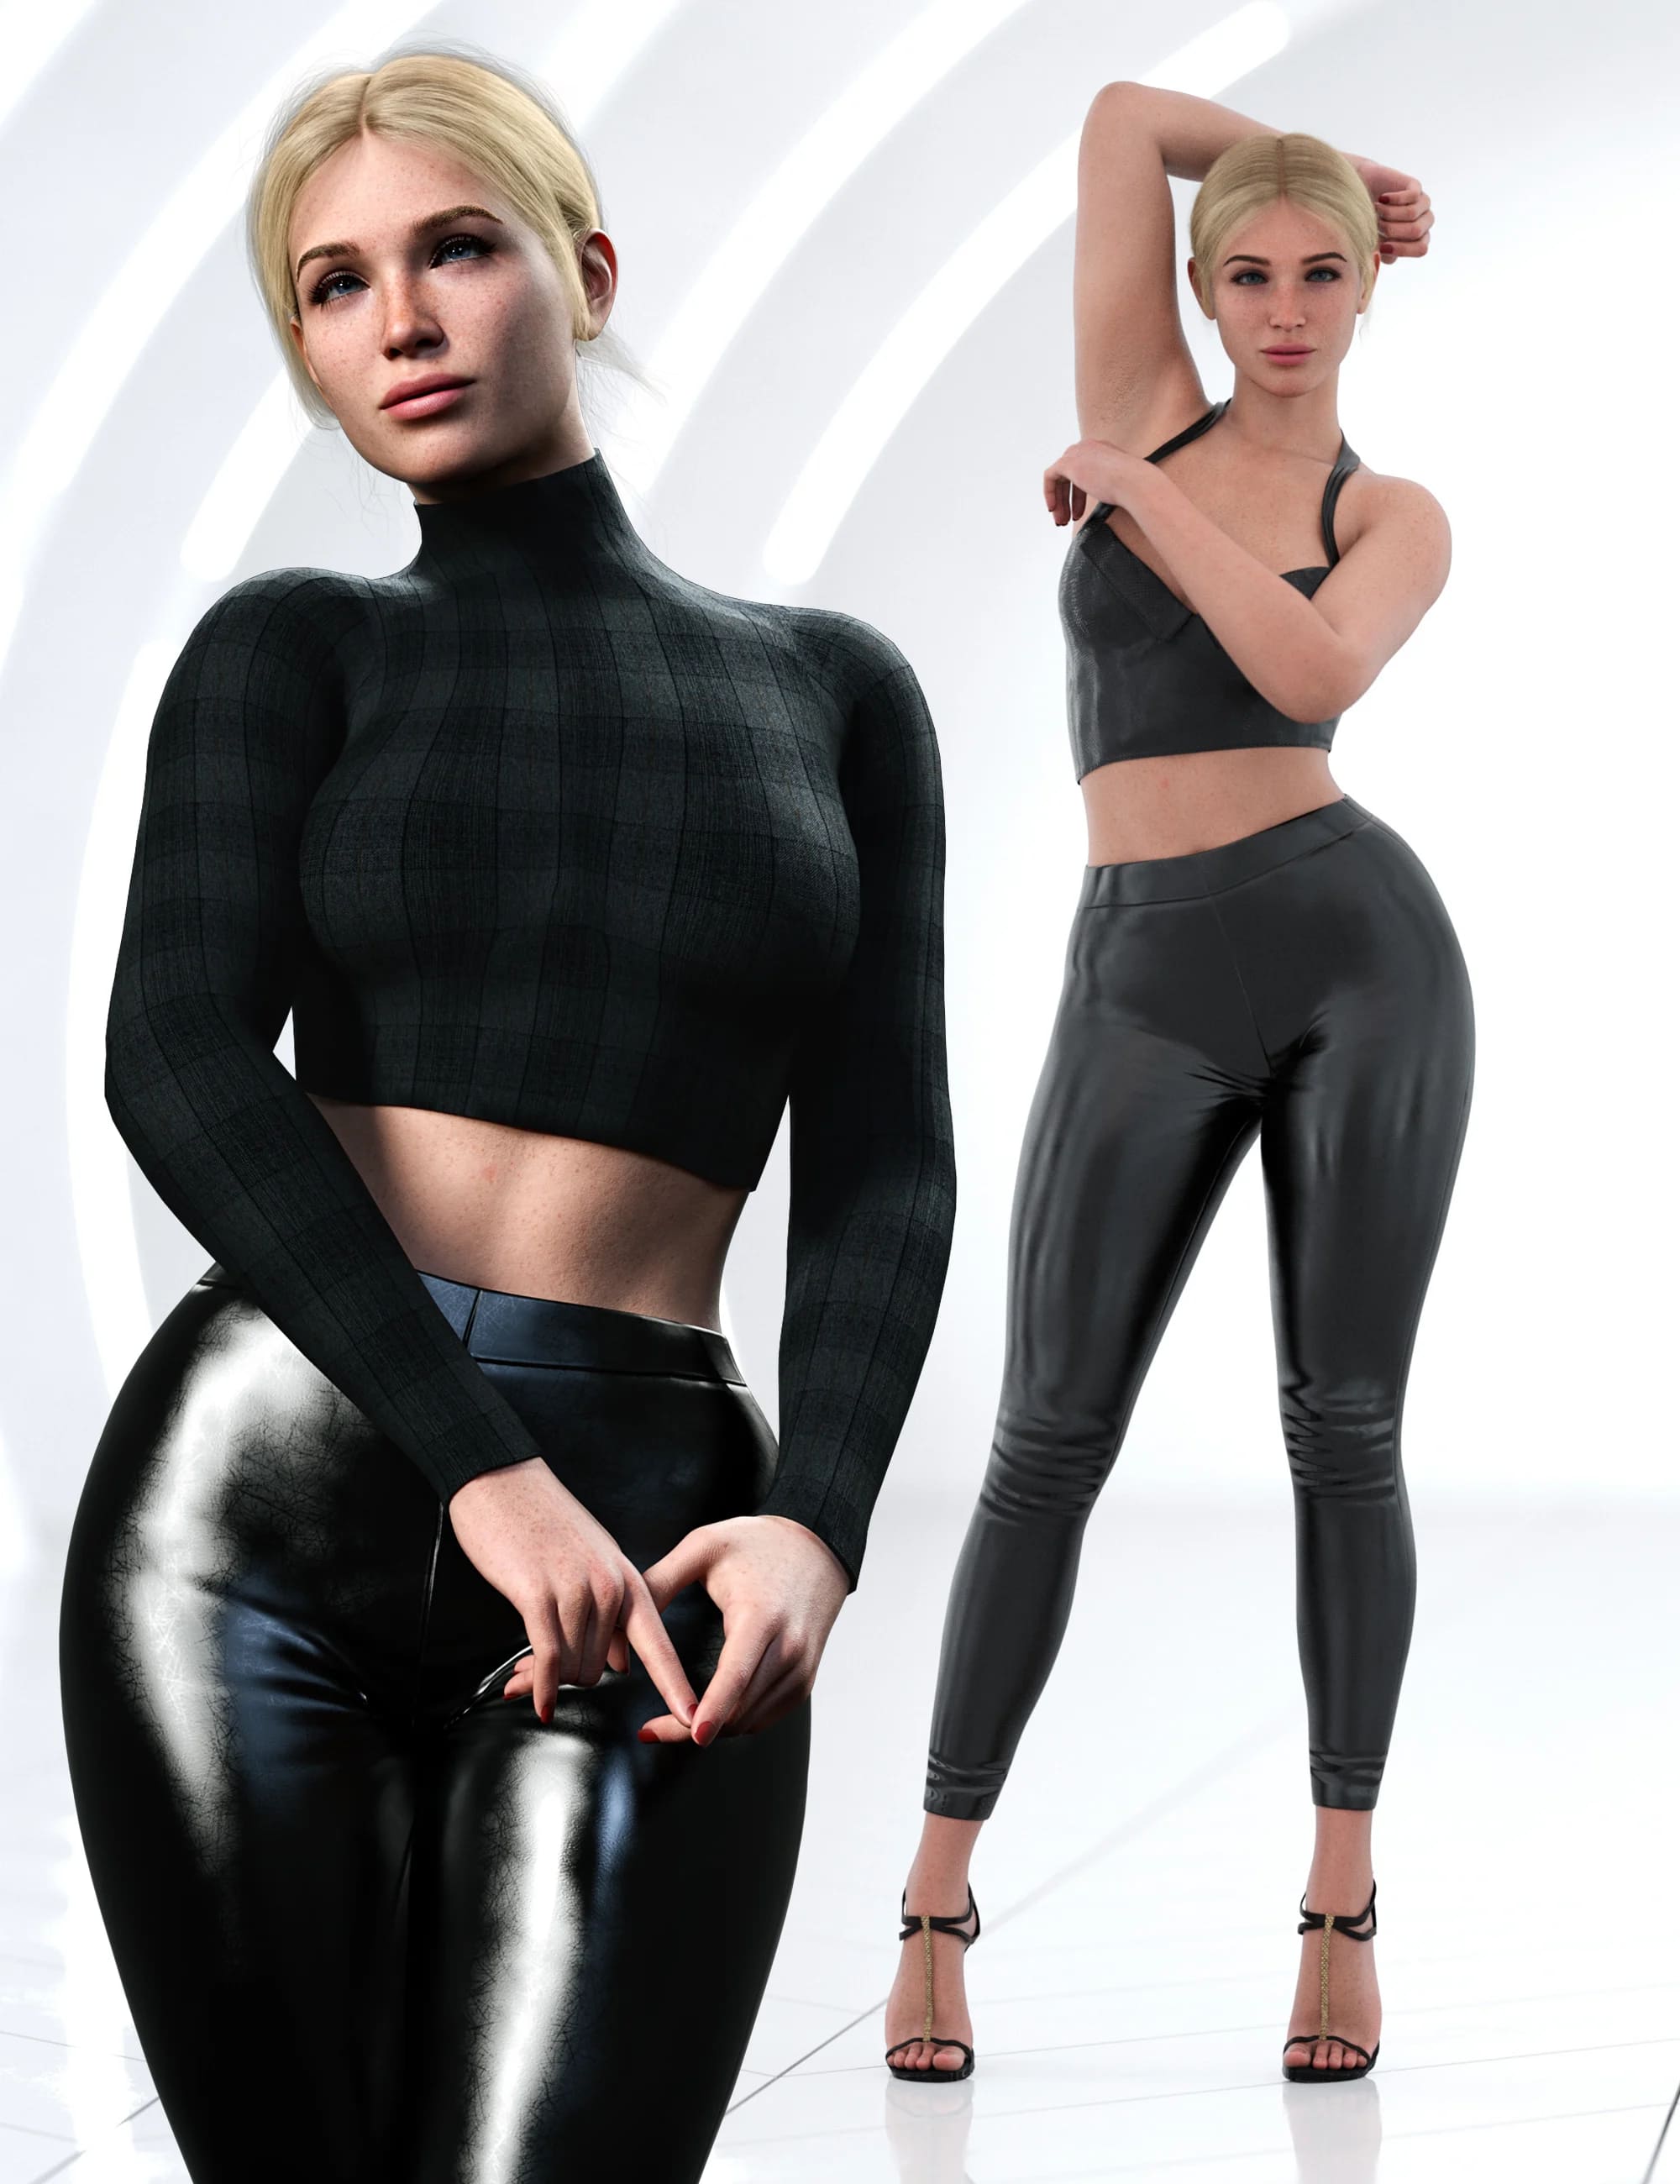 Z Ultimate Model Pose Mega Set for Genesis 8 Female and Genesis 9_DAZ3D下载站